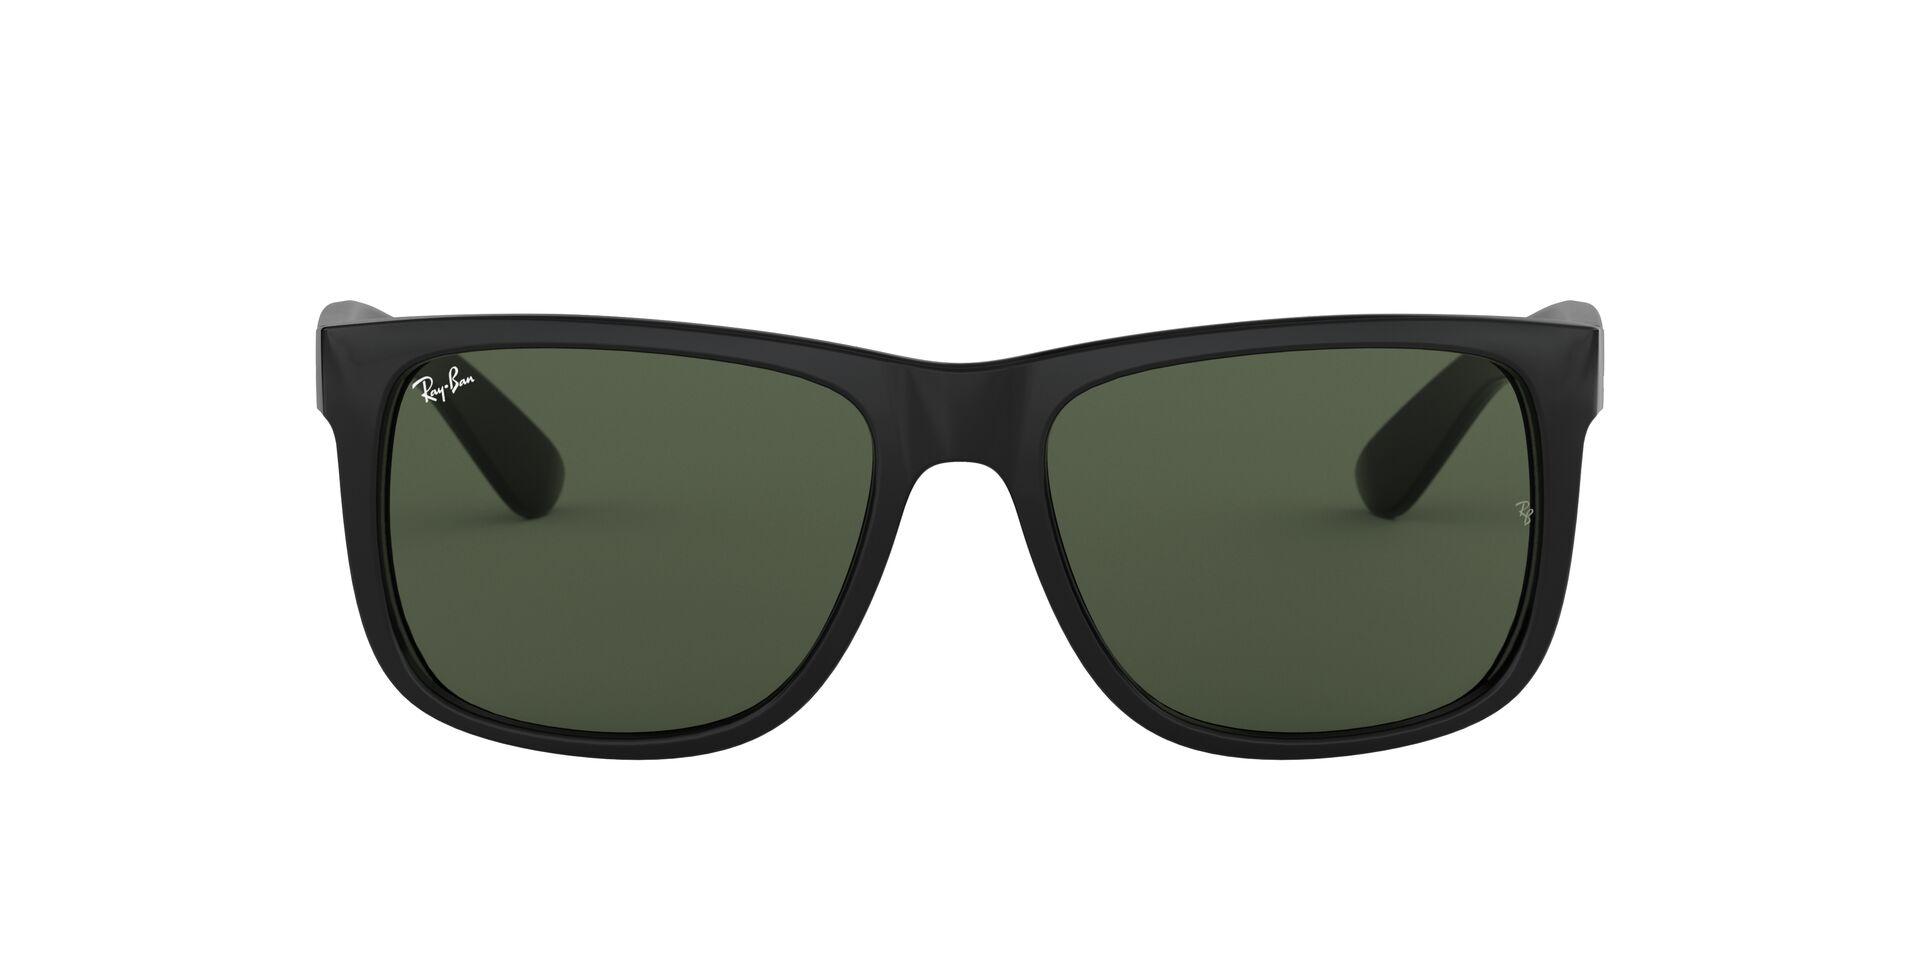 Mắt Kính Ray-Ban Justin - RB4165F 601/71 -Sunglasses